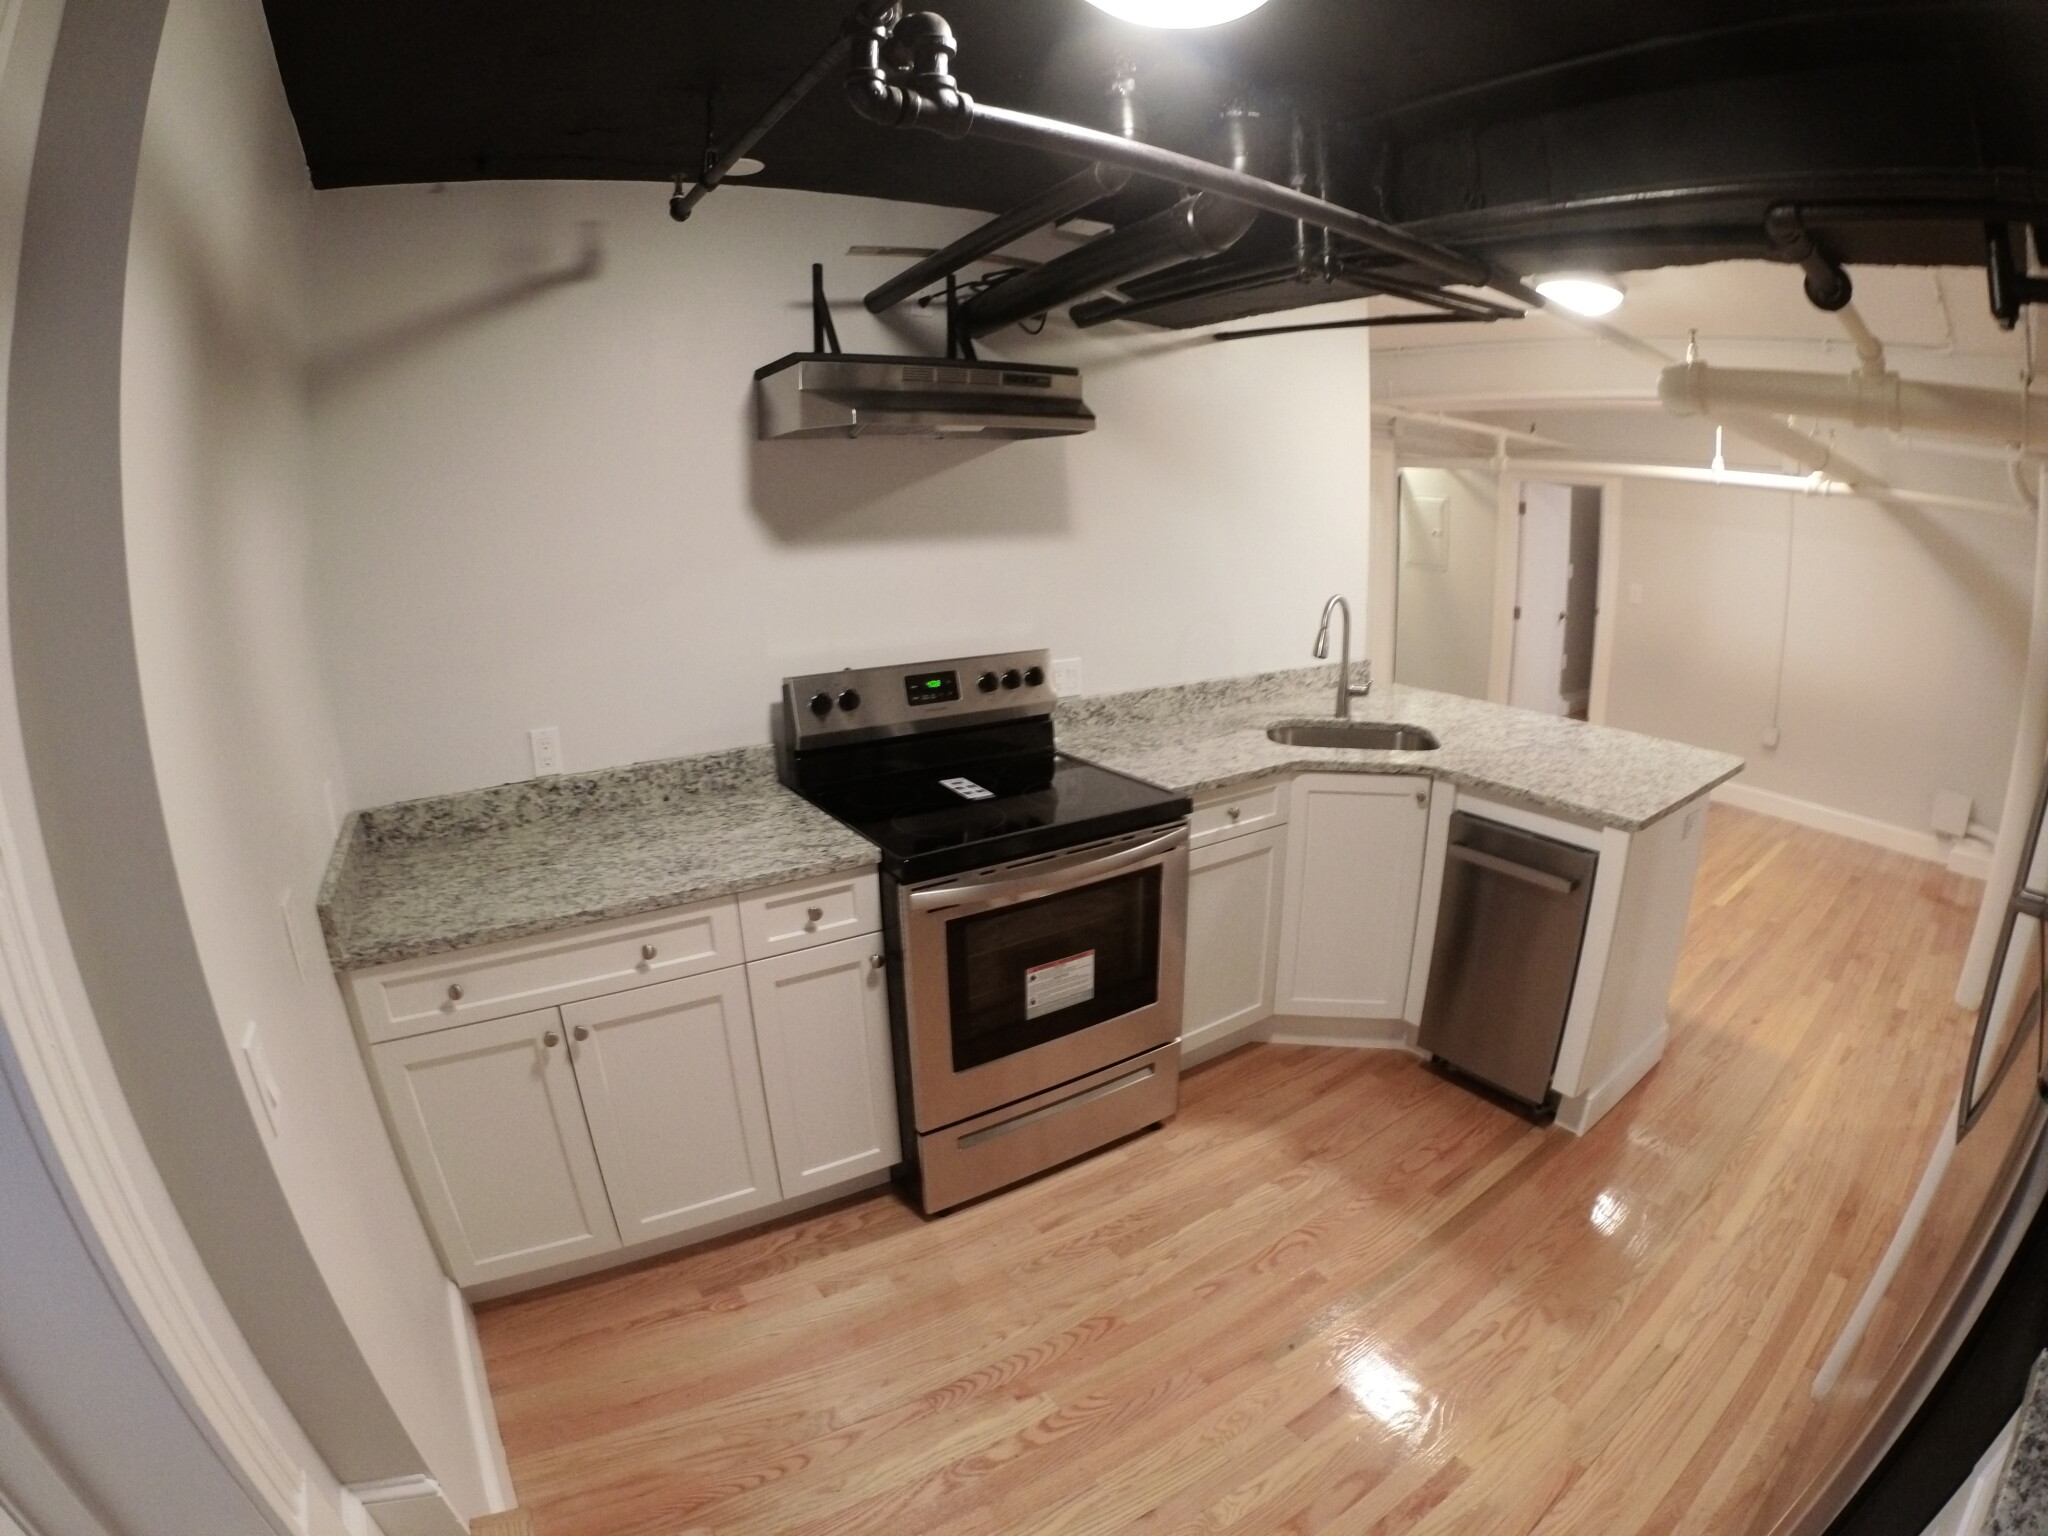 Photos of apartment on Elko St.,Boston MA 02135